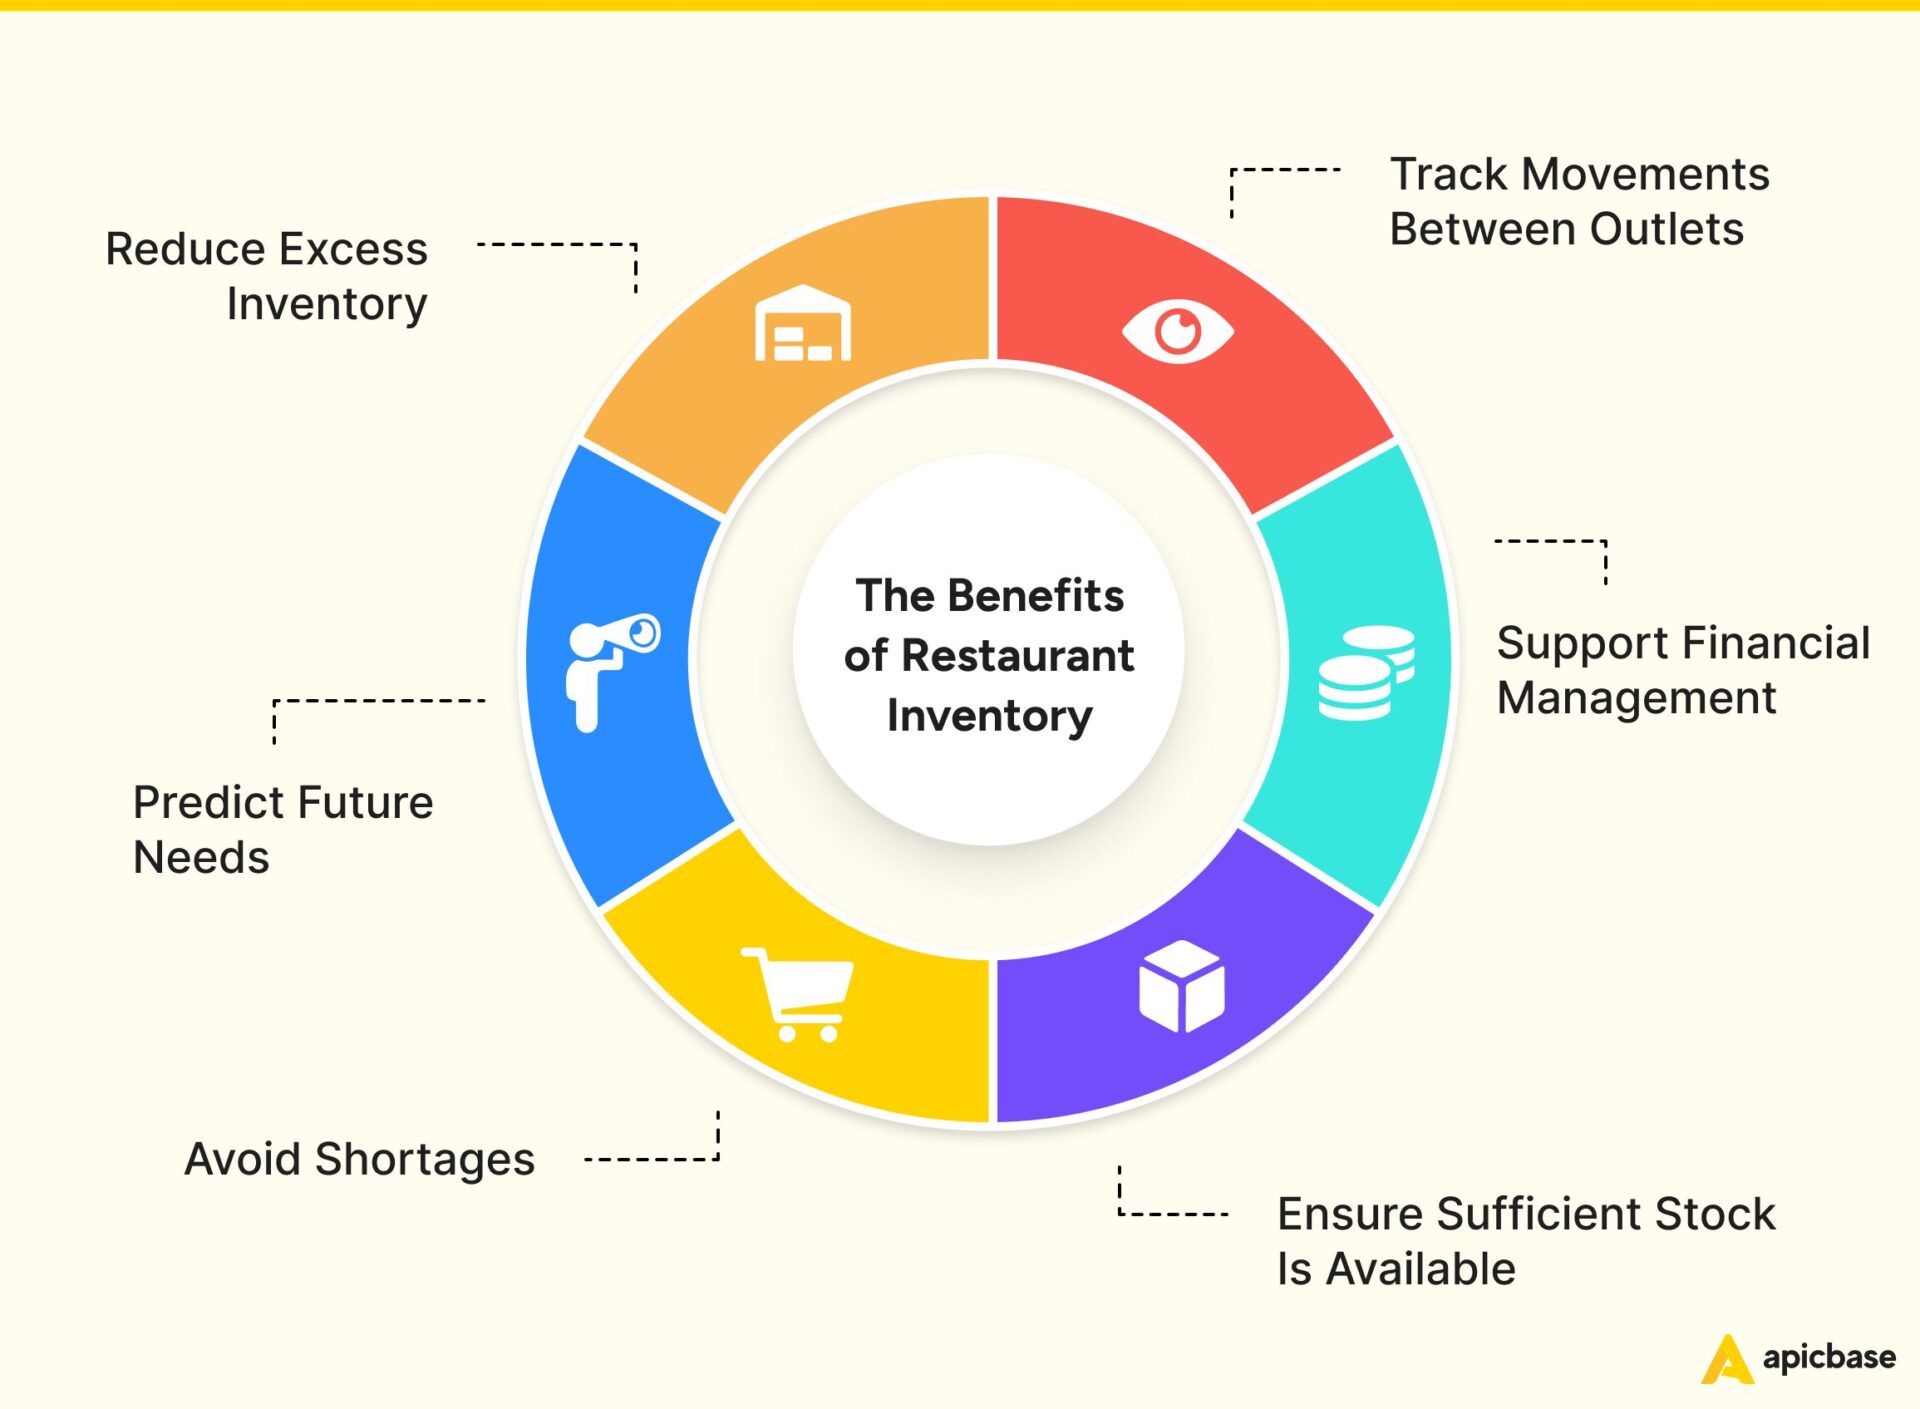 Restaurant Inventory Benefits